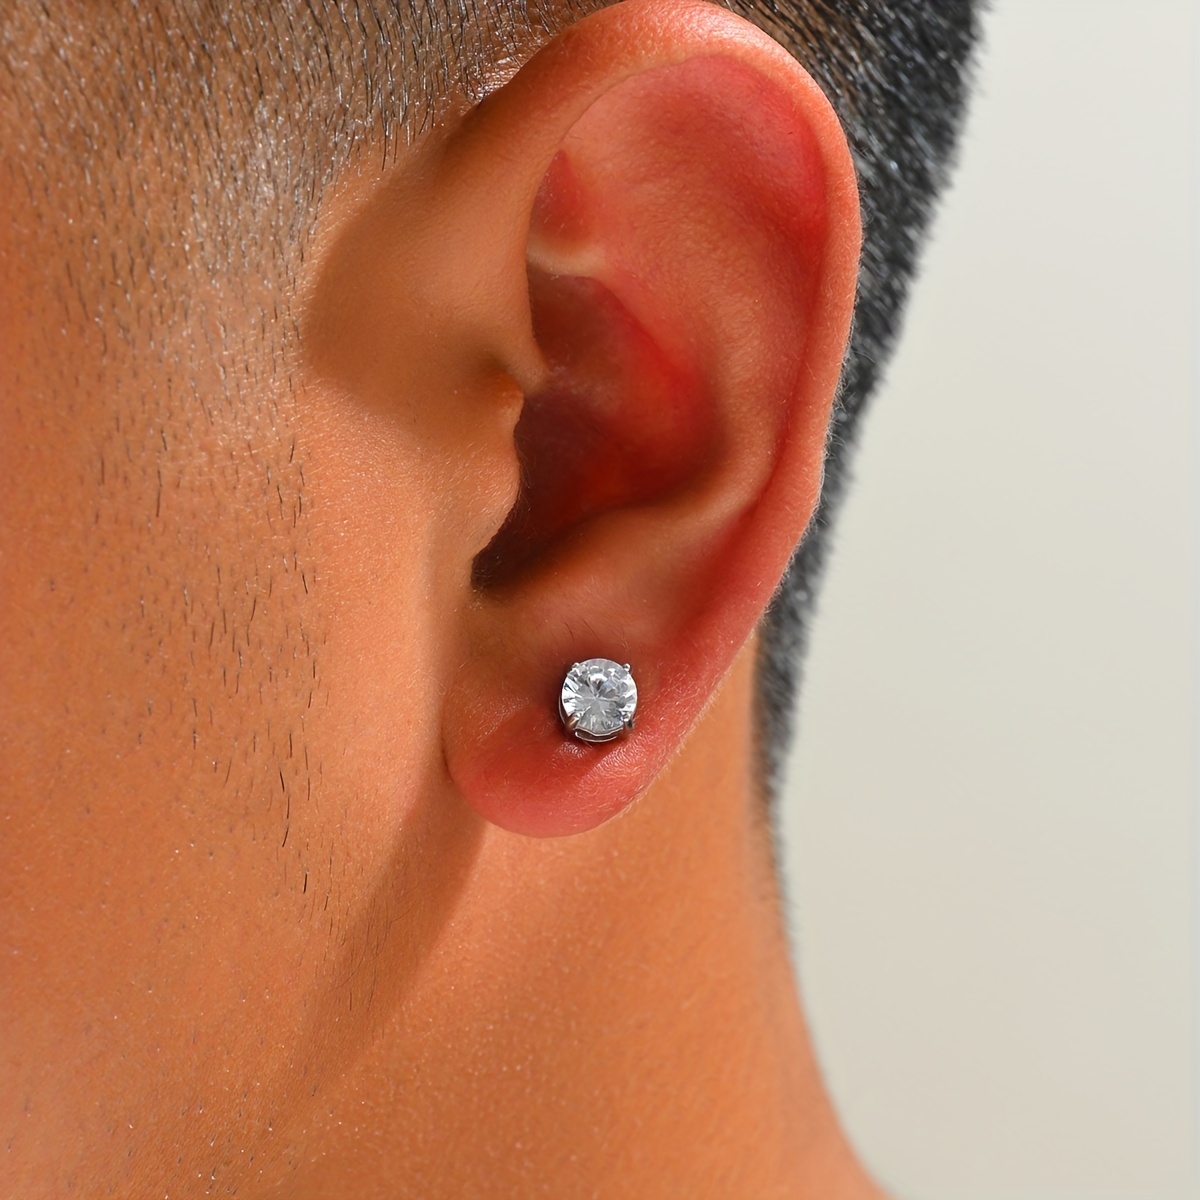 Zircon Non Pierced Ears Earrings Magnetic Earring Studs - Temu